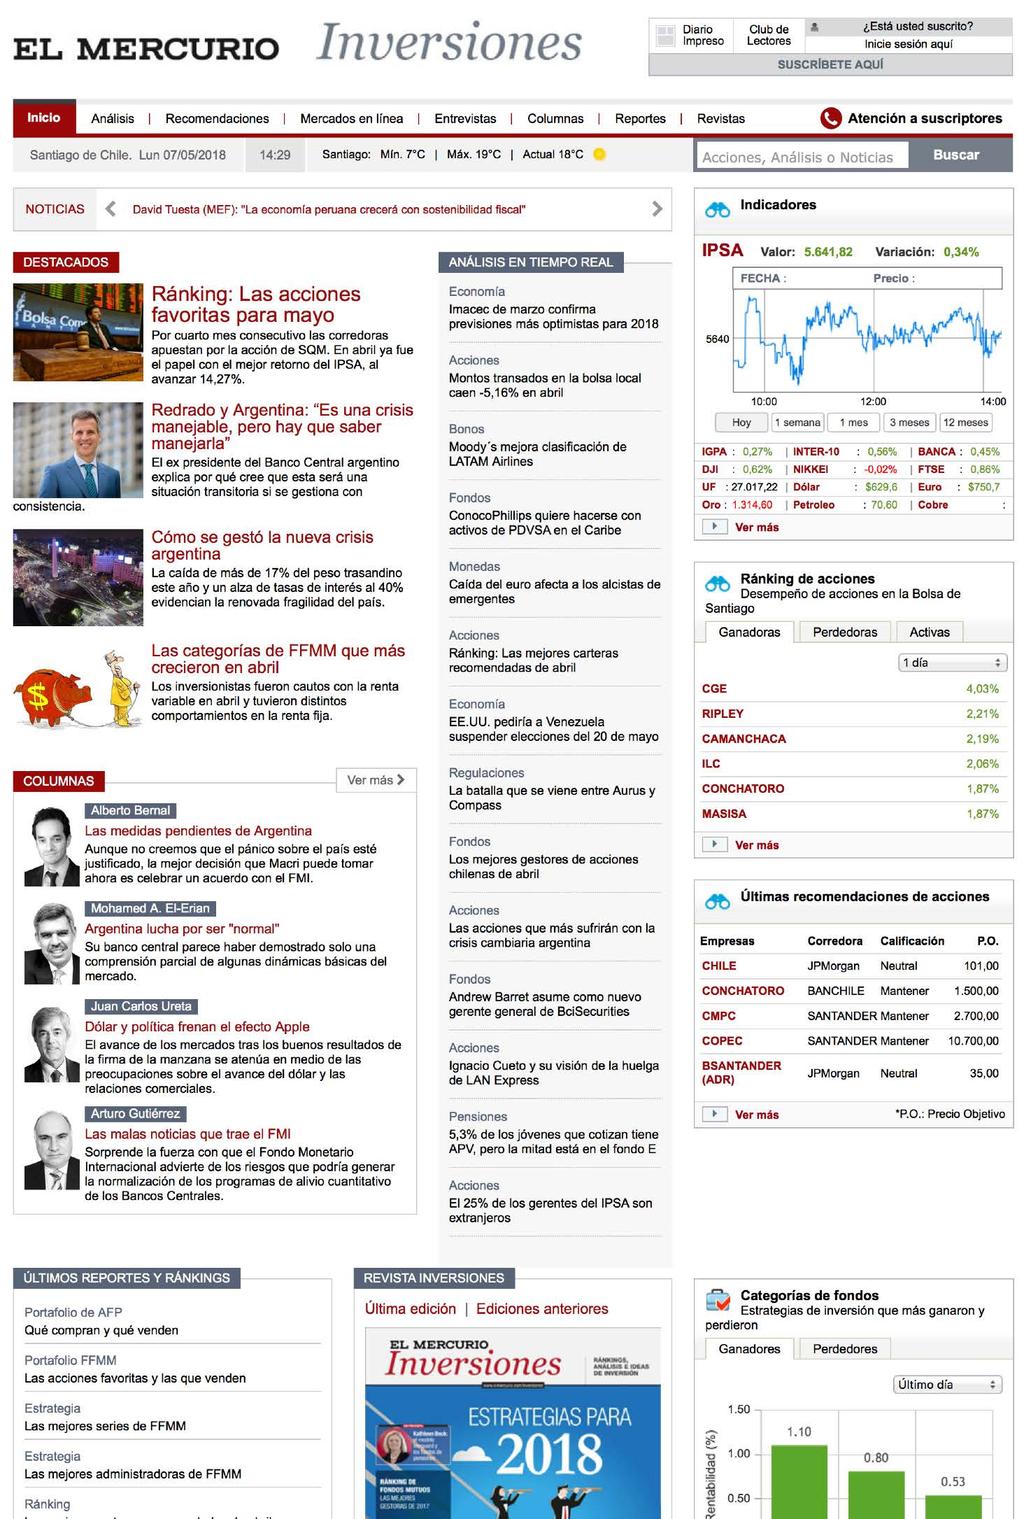 El Mercurio Inversiones ELMERCURIO.COM/INVERSIONES Creación de nueva vista front-end, despliegue de secciones y contenido general. 2014.